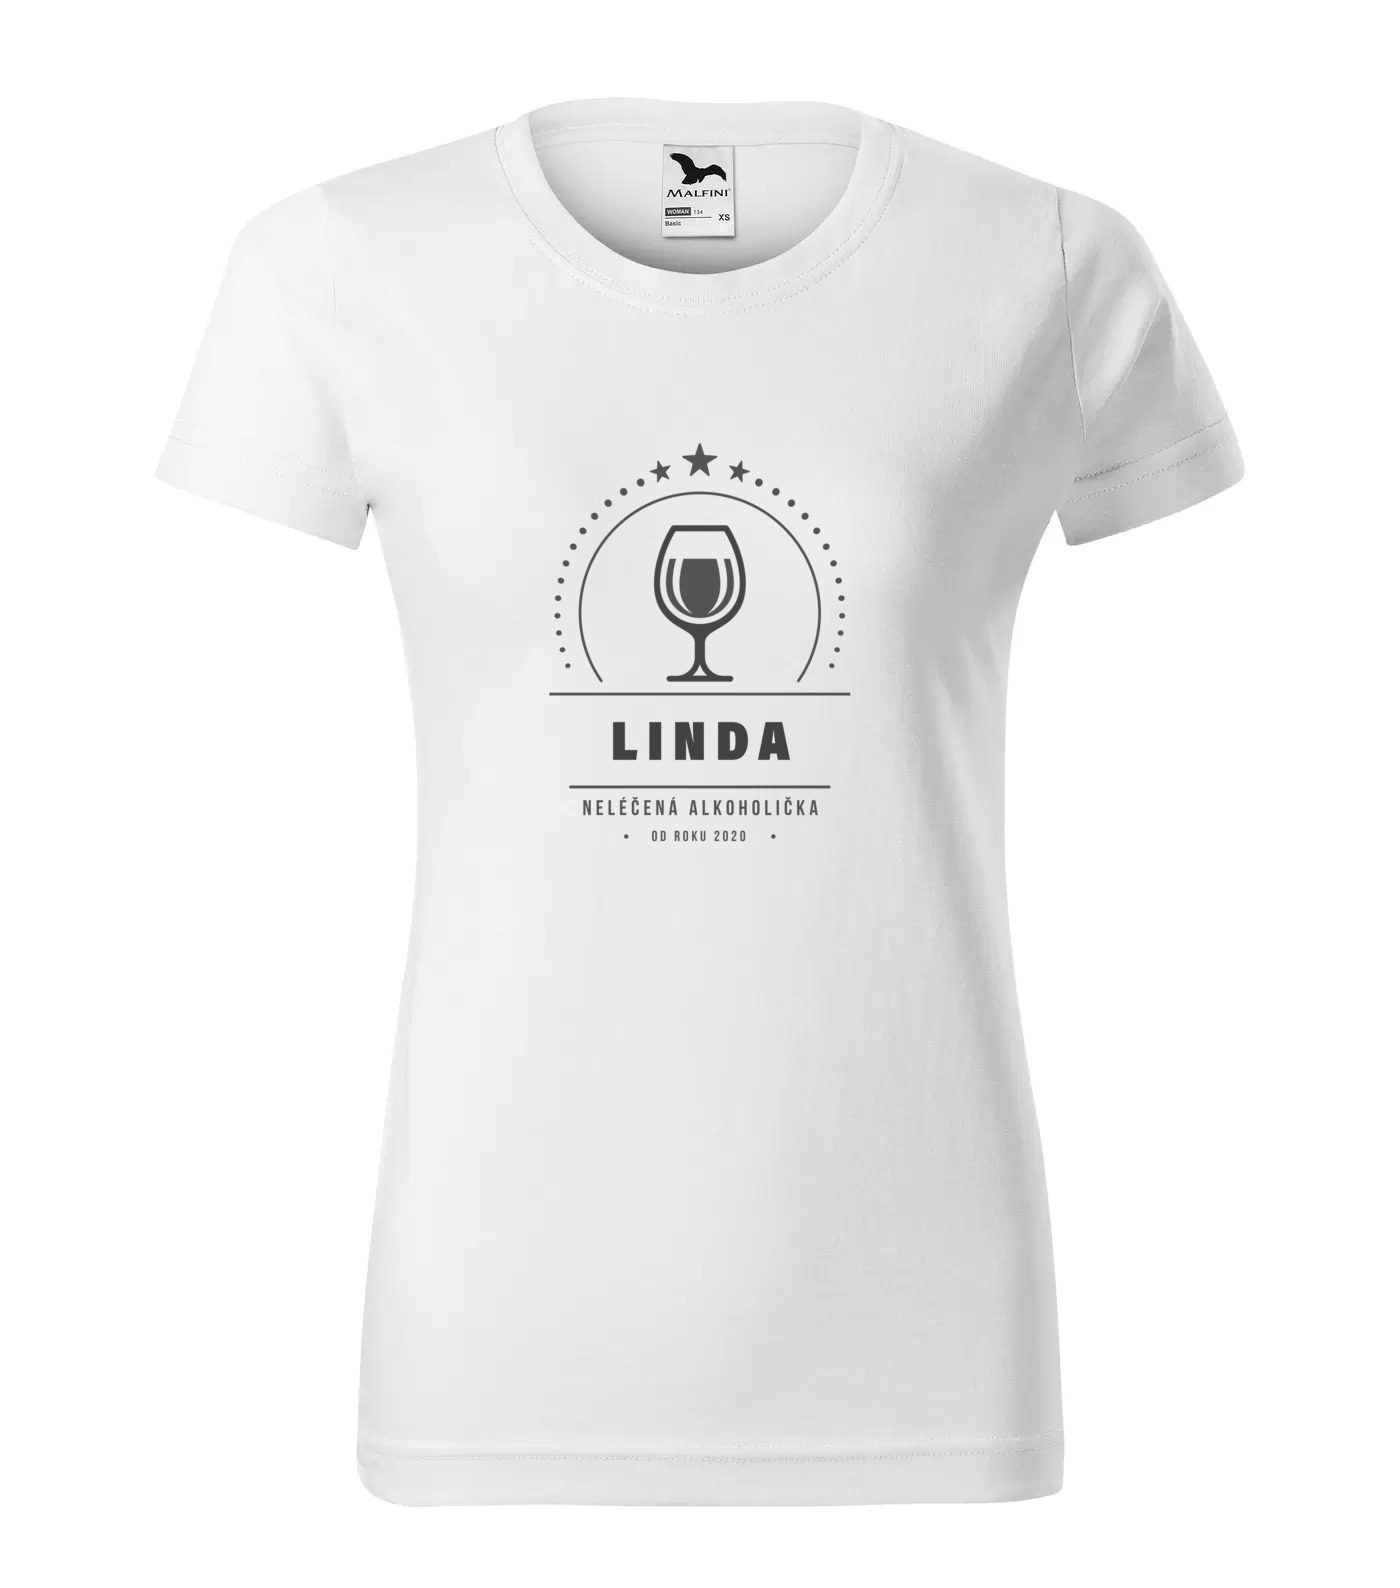 Tričko Alkoholička Linda